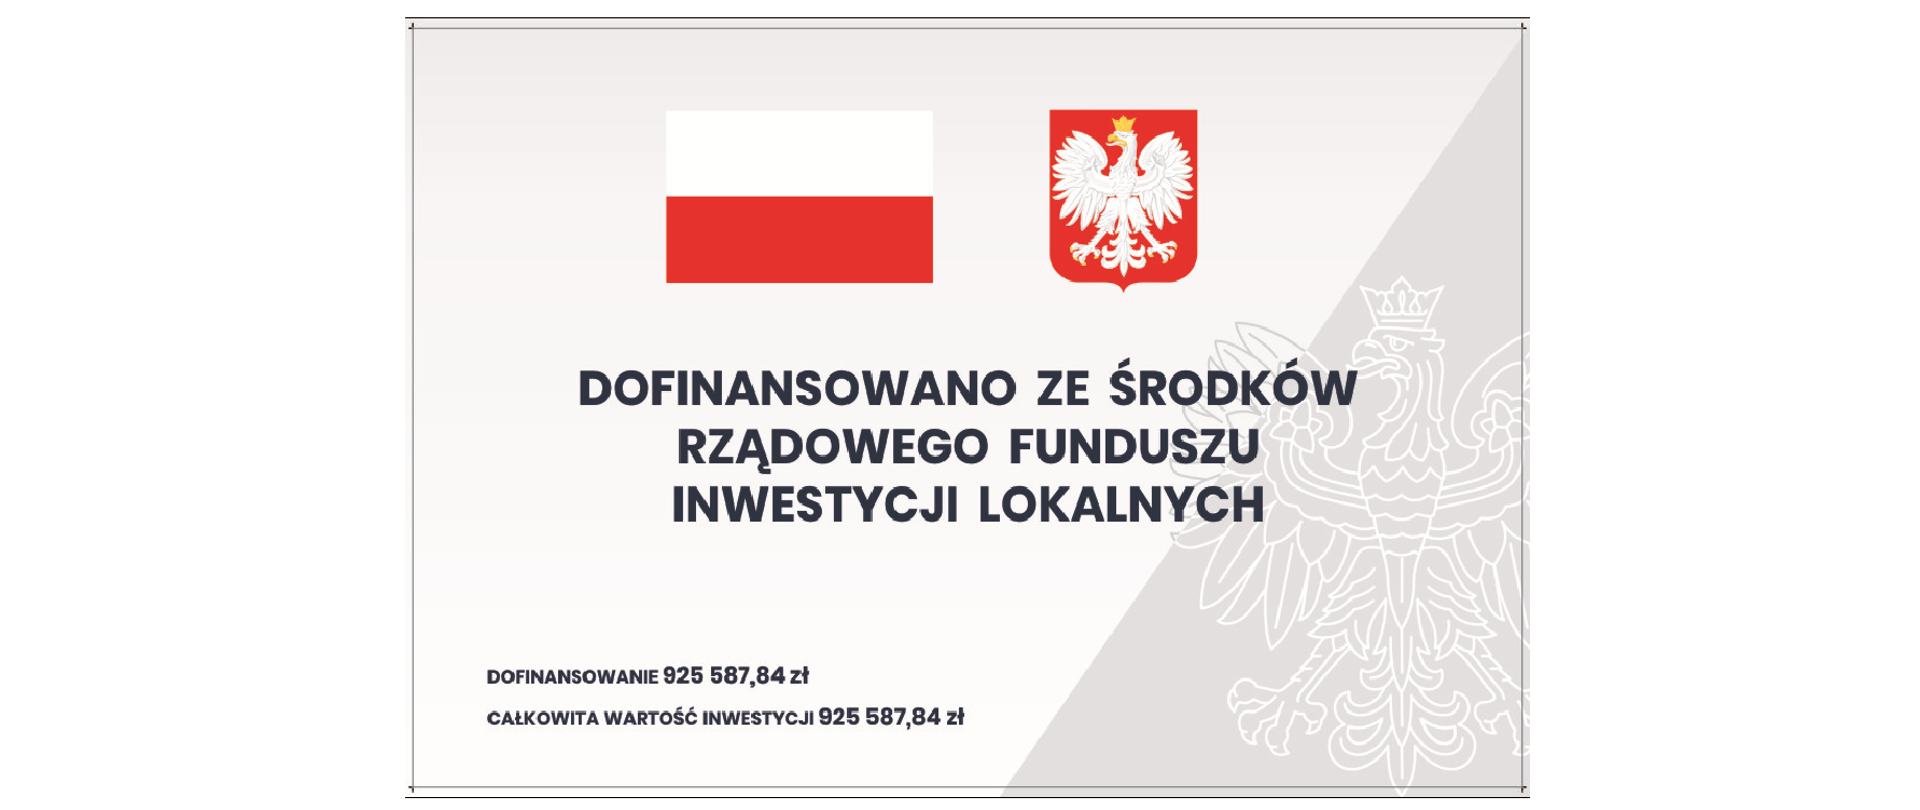 Flaga oraz godło Polski, poniżej treść: "Dofinansowano ze środków Rządowego Funduszu Inwestycji Lokalnych, Dofinansowanie: 925 587, 84 zł, całkowita wartość inwestycji: 925 587,84 zł